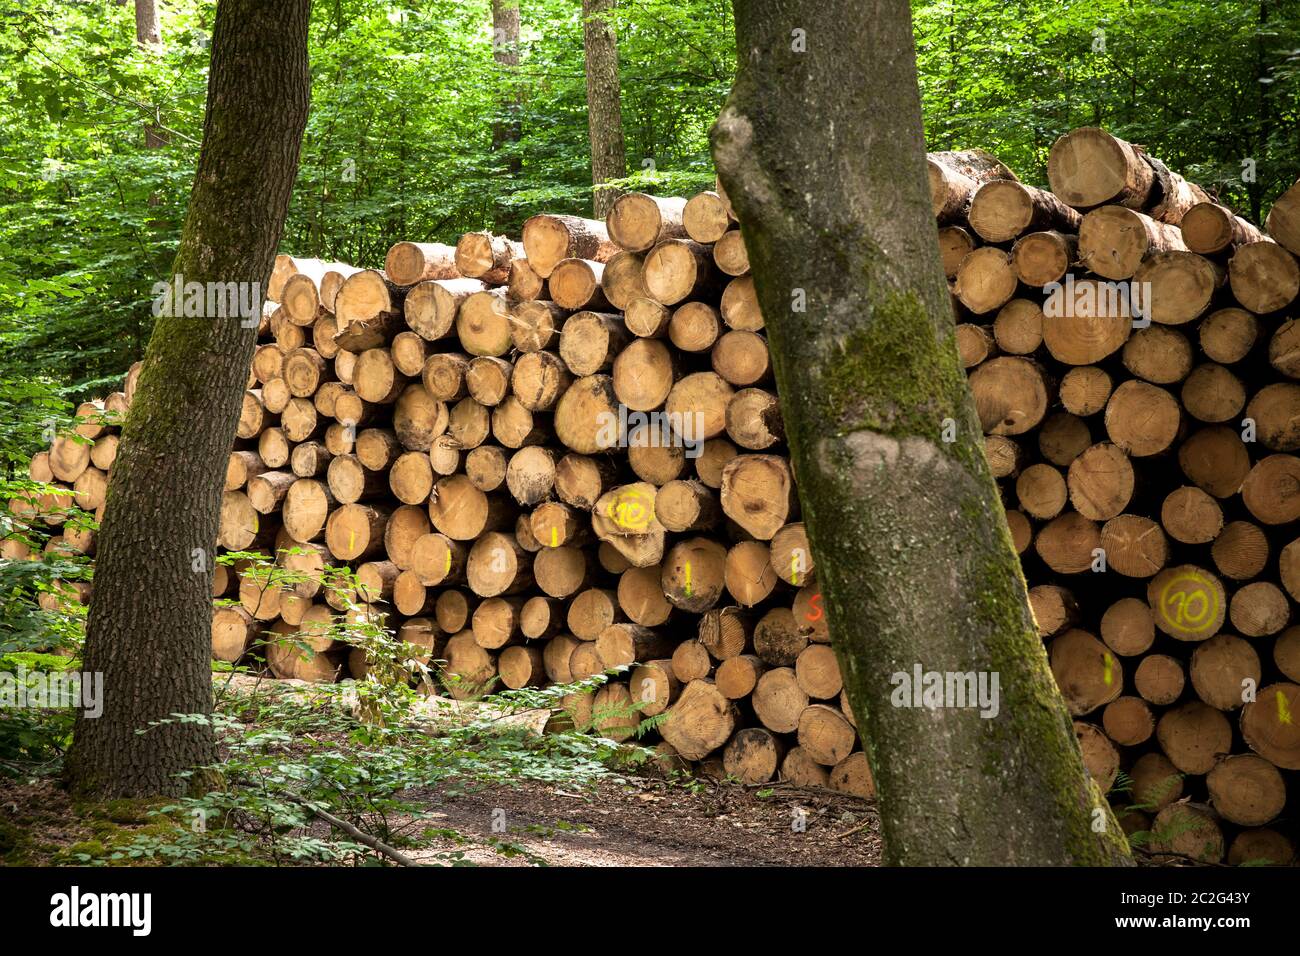 Alberi in legno, tronchi d'albero, in una foresta vicino a Haltern nel distretto di Recklinghausen, Renania Settentrionale-Vestfalia, Germania. Gefaellte Baeume, Baumstaemme, i Foto Stock